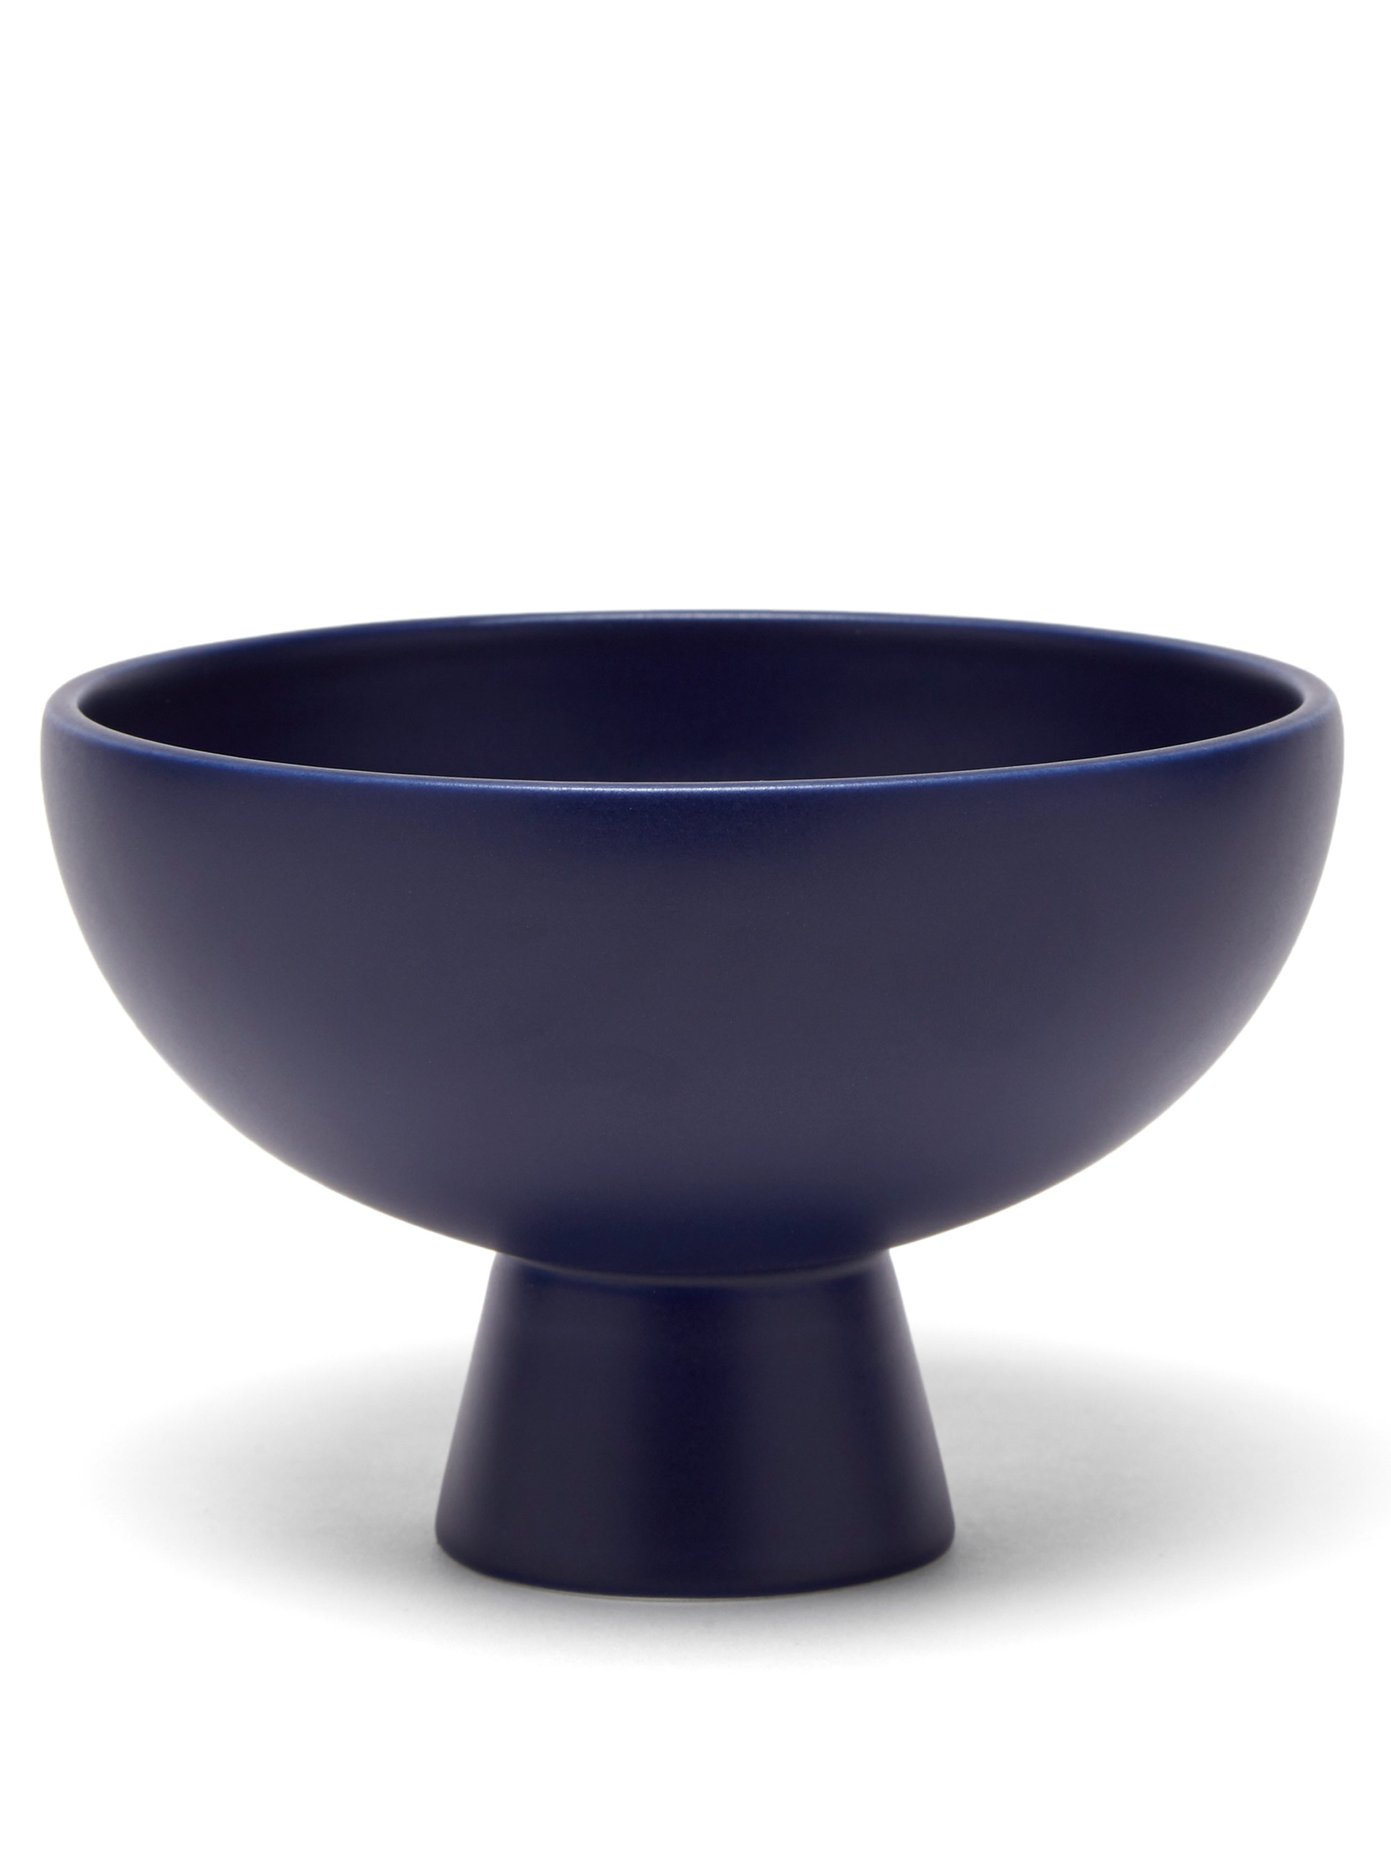 라위 세라믹 볼 (덴마크 코펜하겐 미니멀리즘 브랜드, 포르투칼에서 수제작!)  Raawii Blue Stroem large ceramic bowl